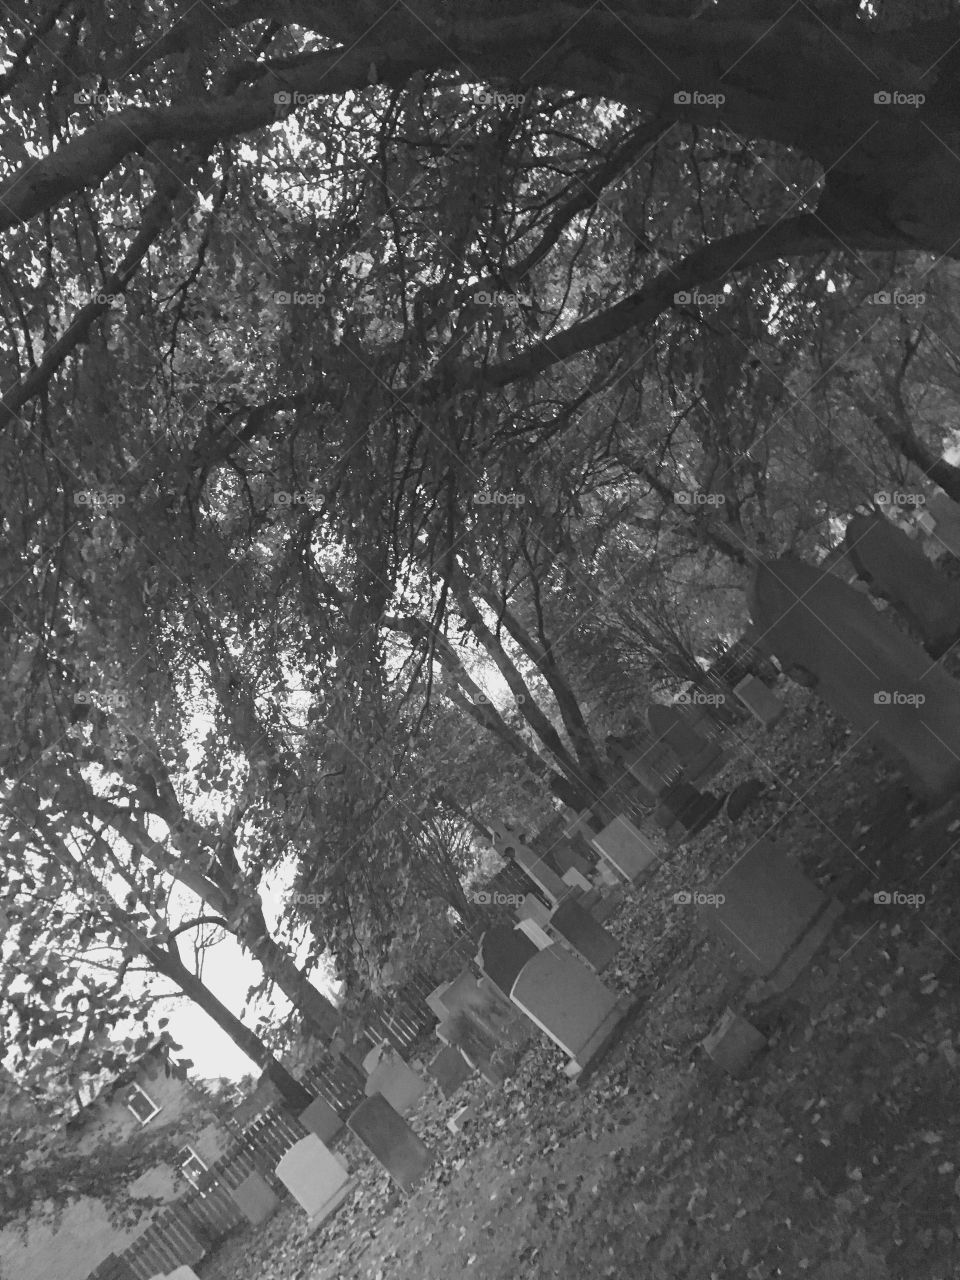 Cemetery in monochrome 